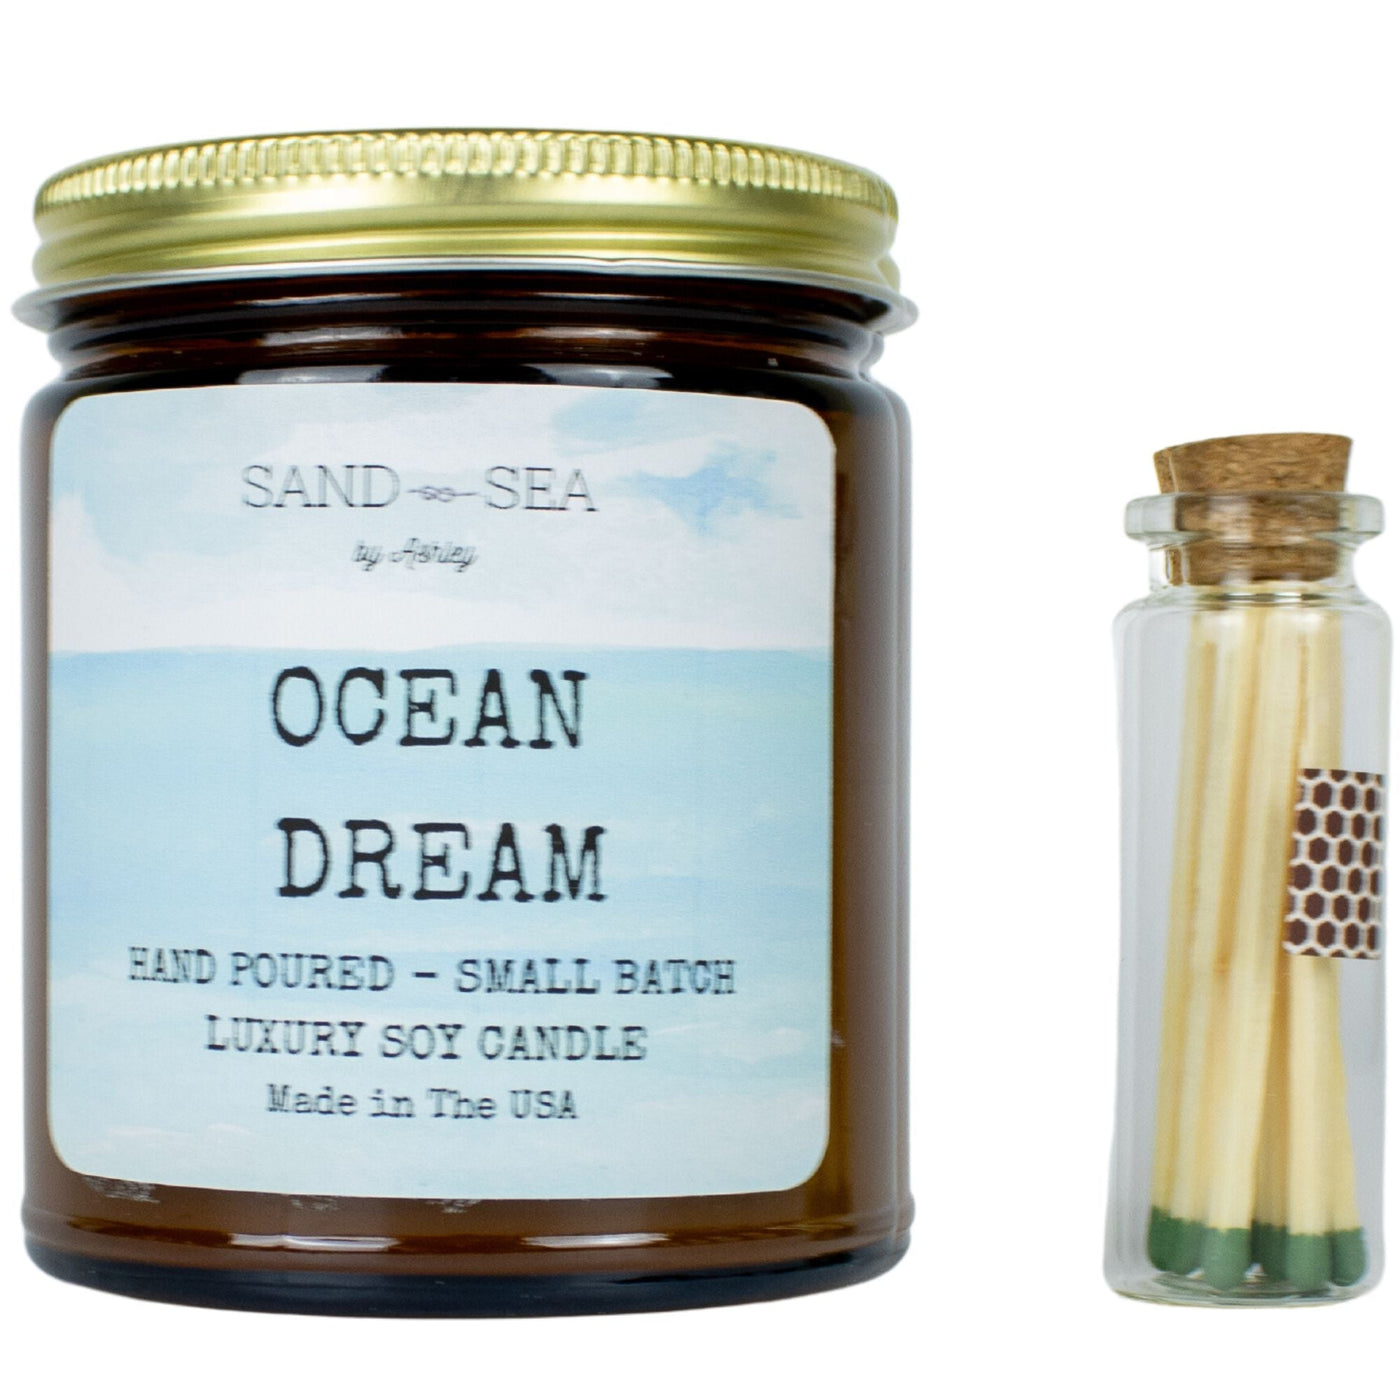 Ocean Dream - Handmade Soy Candle 8 oz - Sand & Sea by Ashley